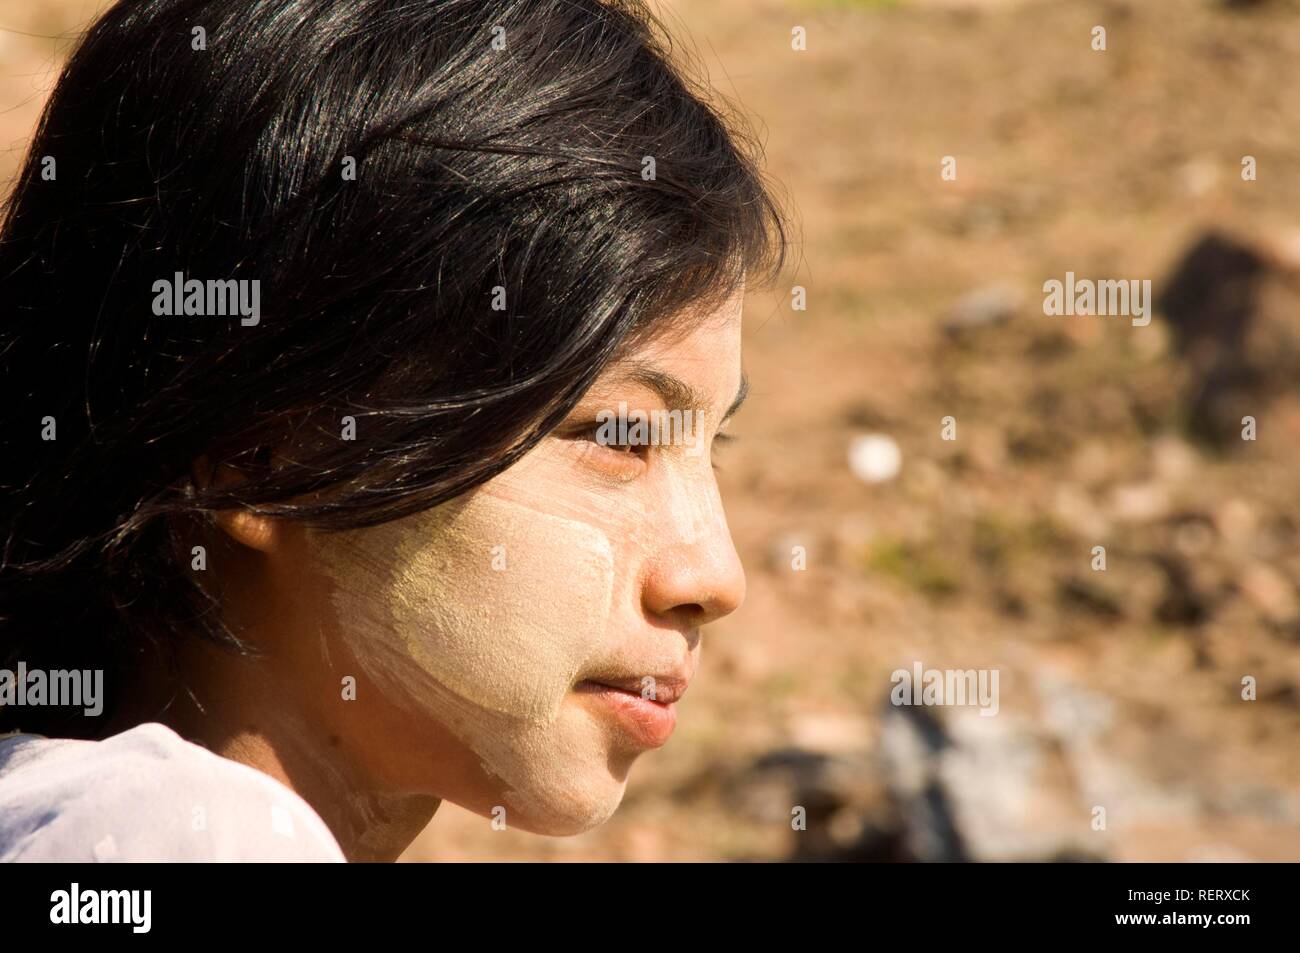 Giovane ragazza birmano con corteccia thanaka make-up Mingun, birmania, myanmar, sud-est asiatico Foto Stock